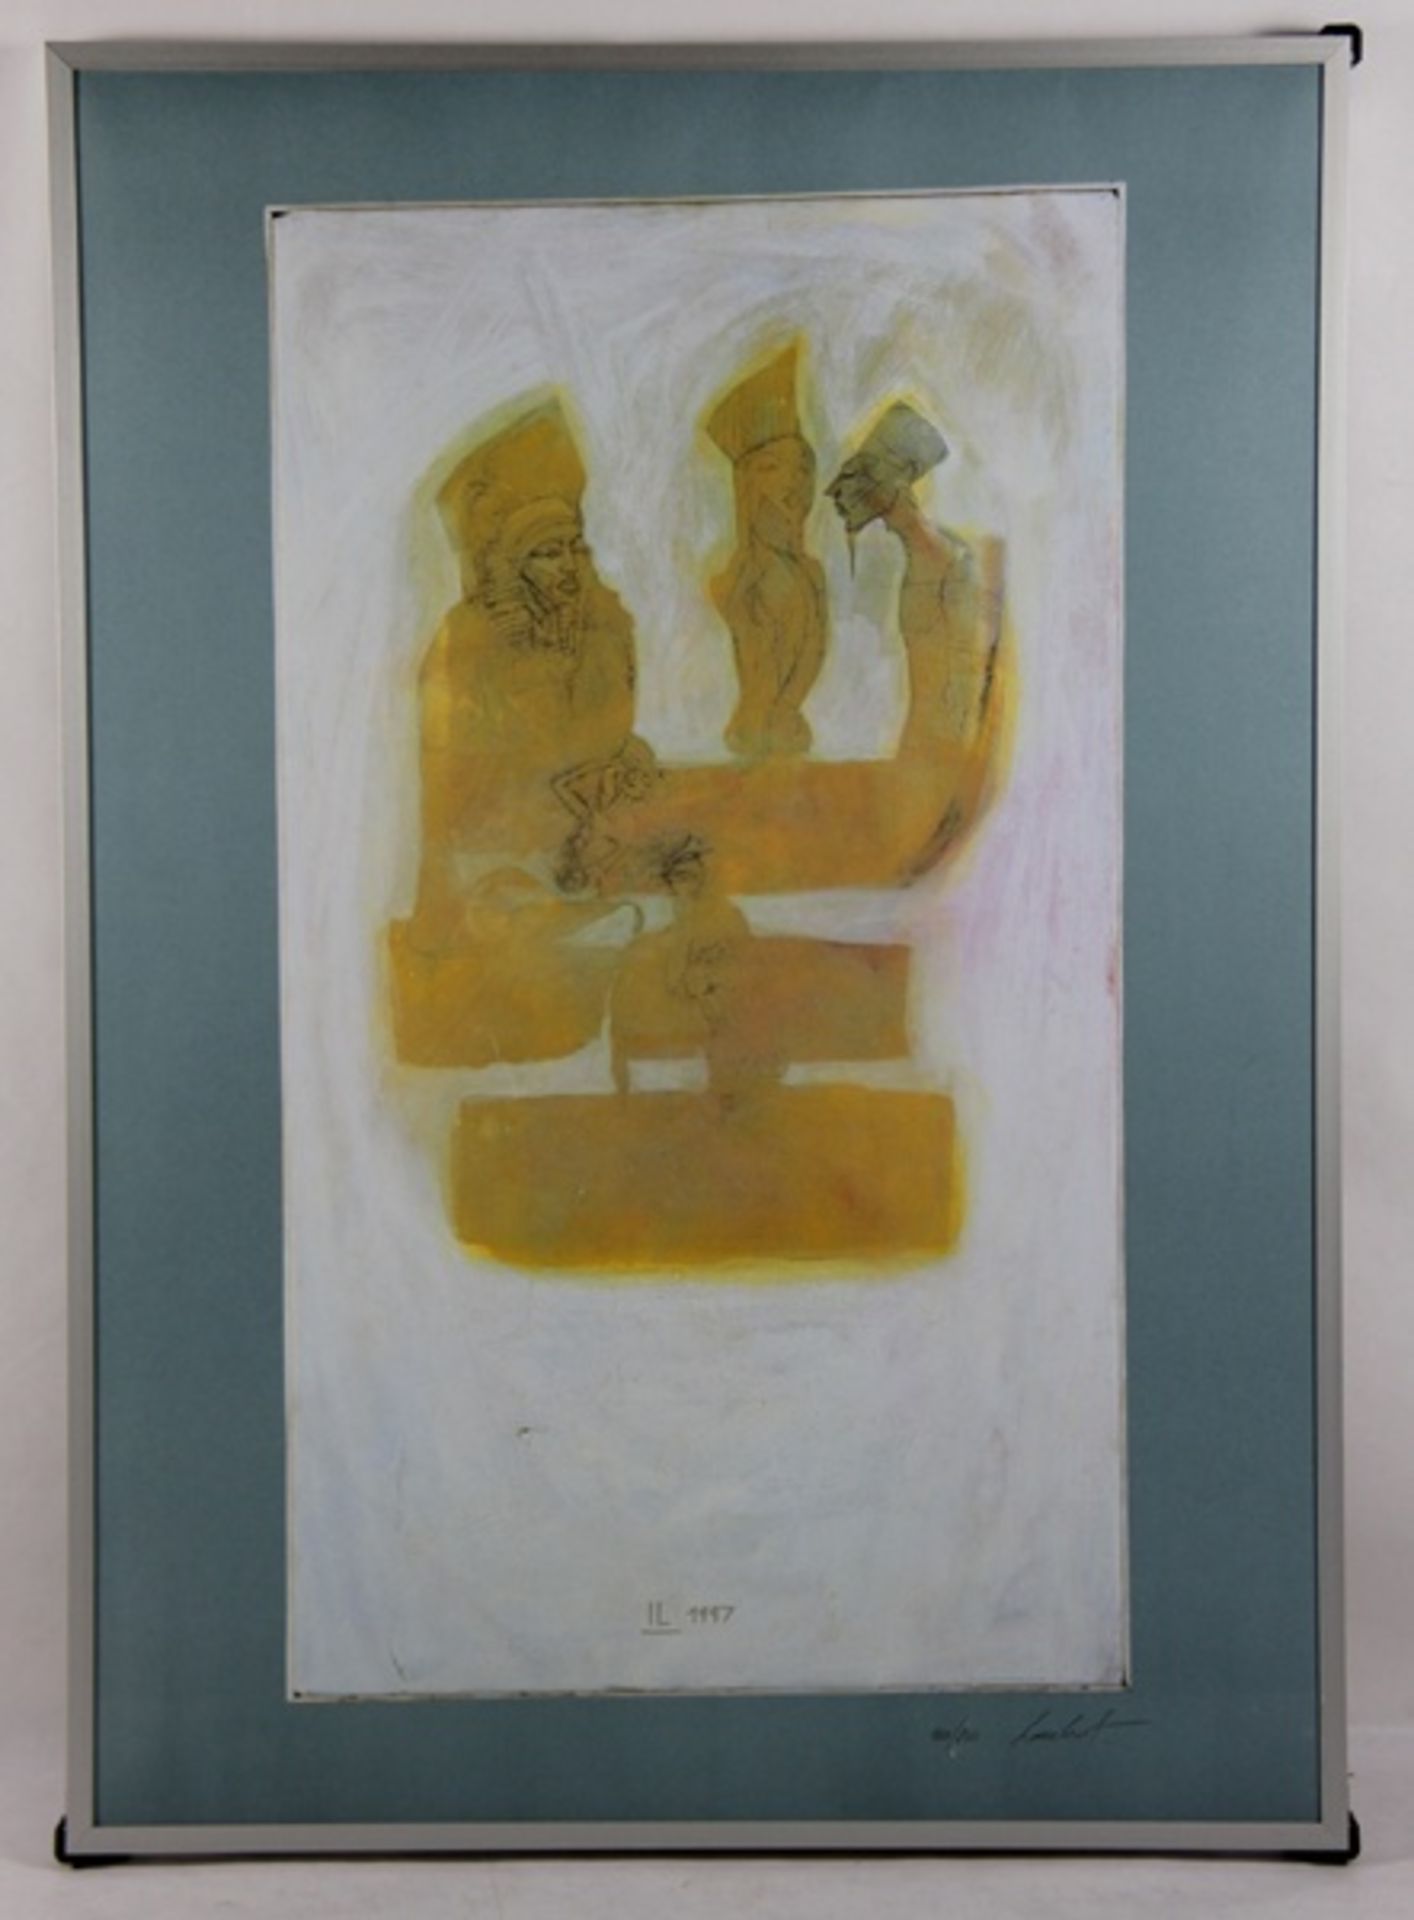 Unbekannter Künstler1997, Graphik, 3 ägyptisierende Personen, unten rechts Bleistiftsignatu